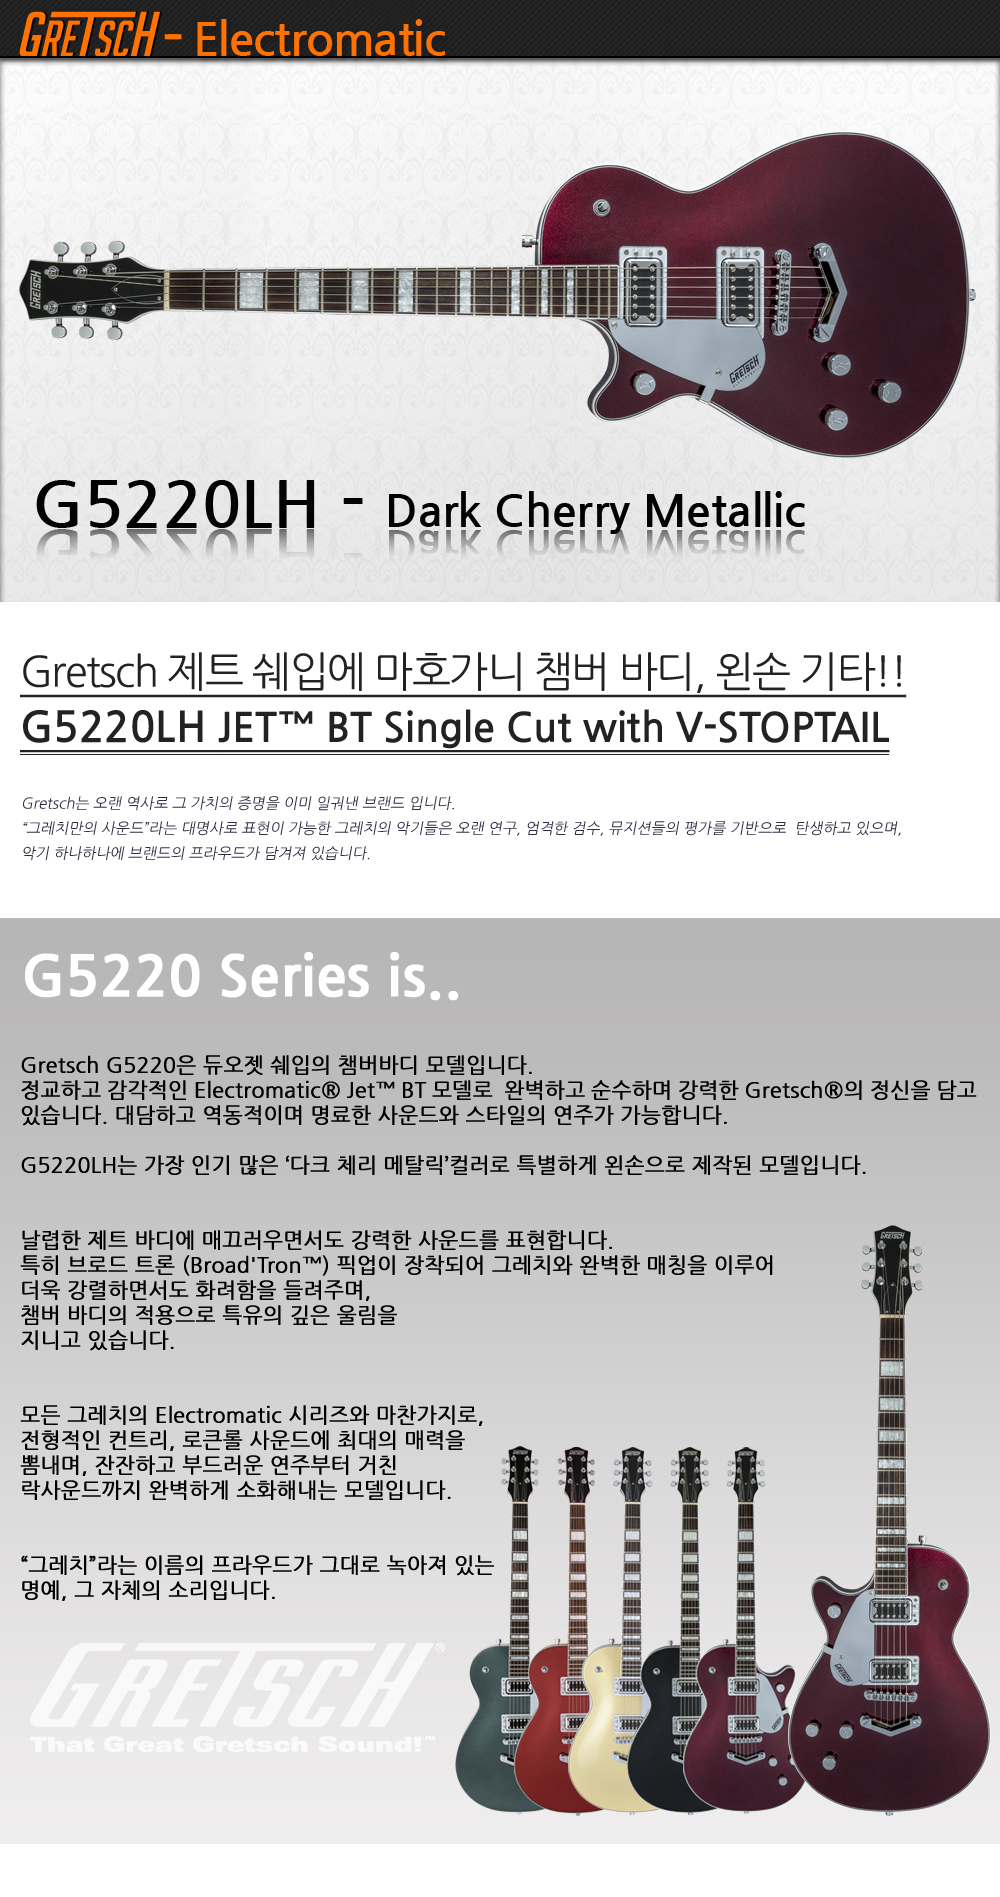 Gretsch-G5220LH-DarkCherryMetallic_1_165316.jpg